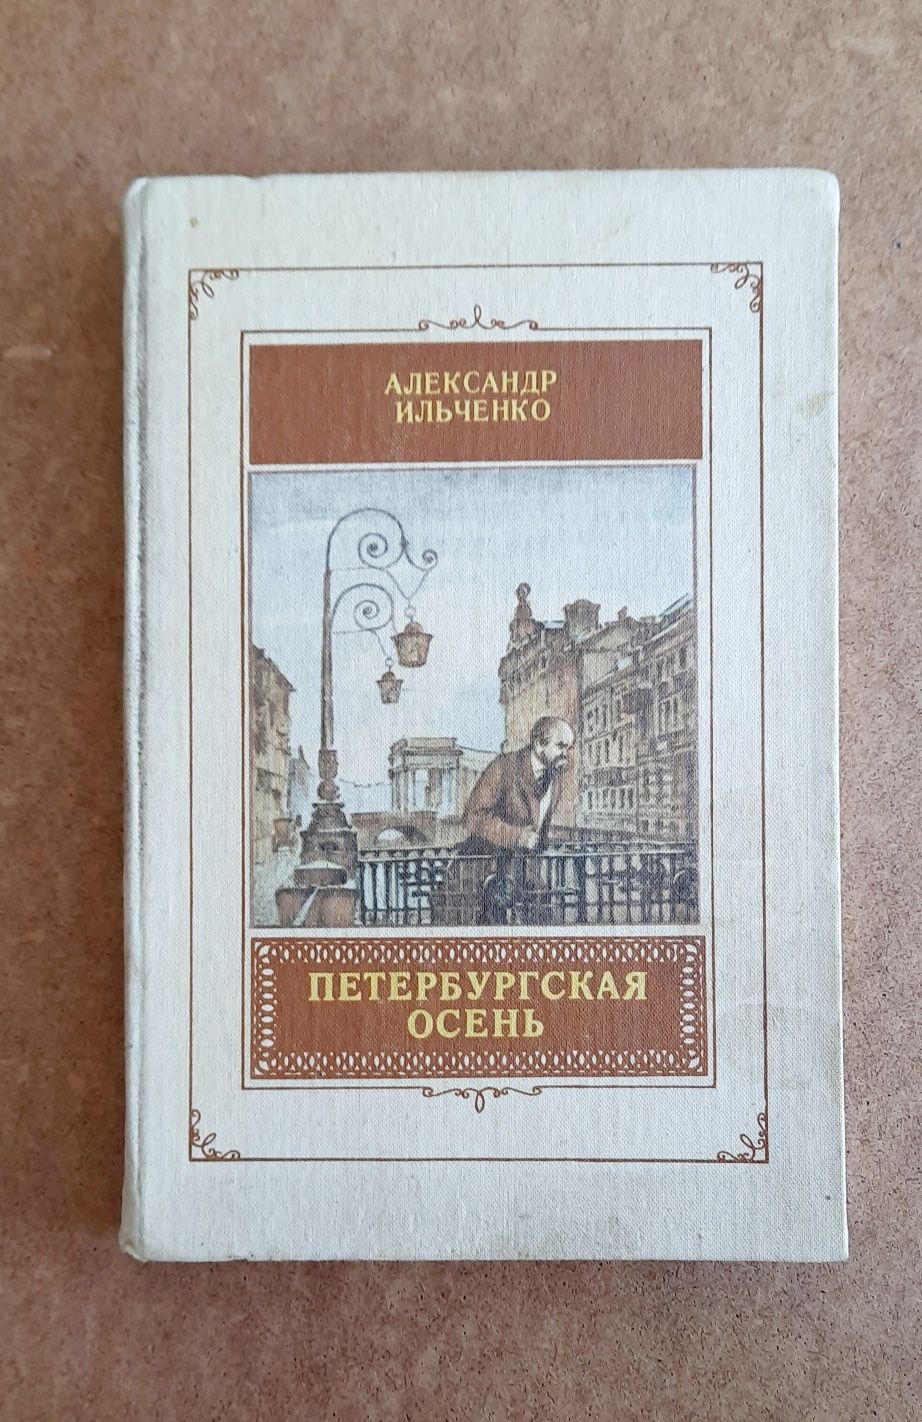 Книга "Петербургская осень" Ильченко А.